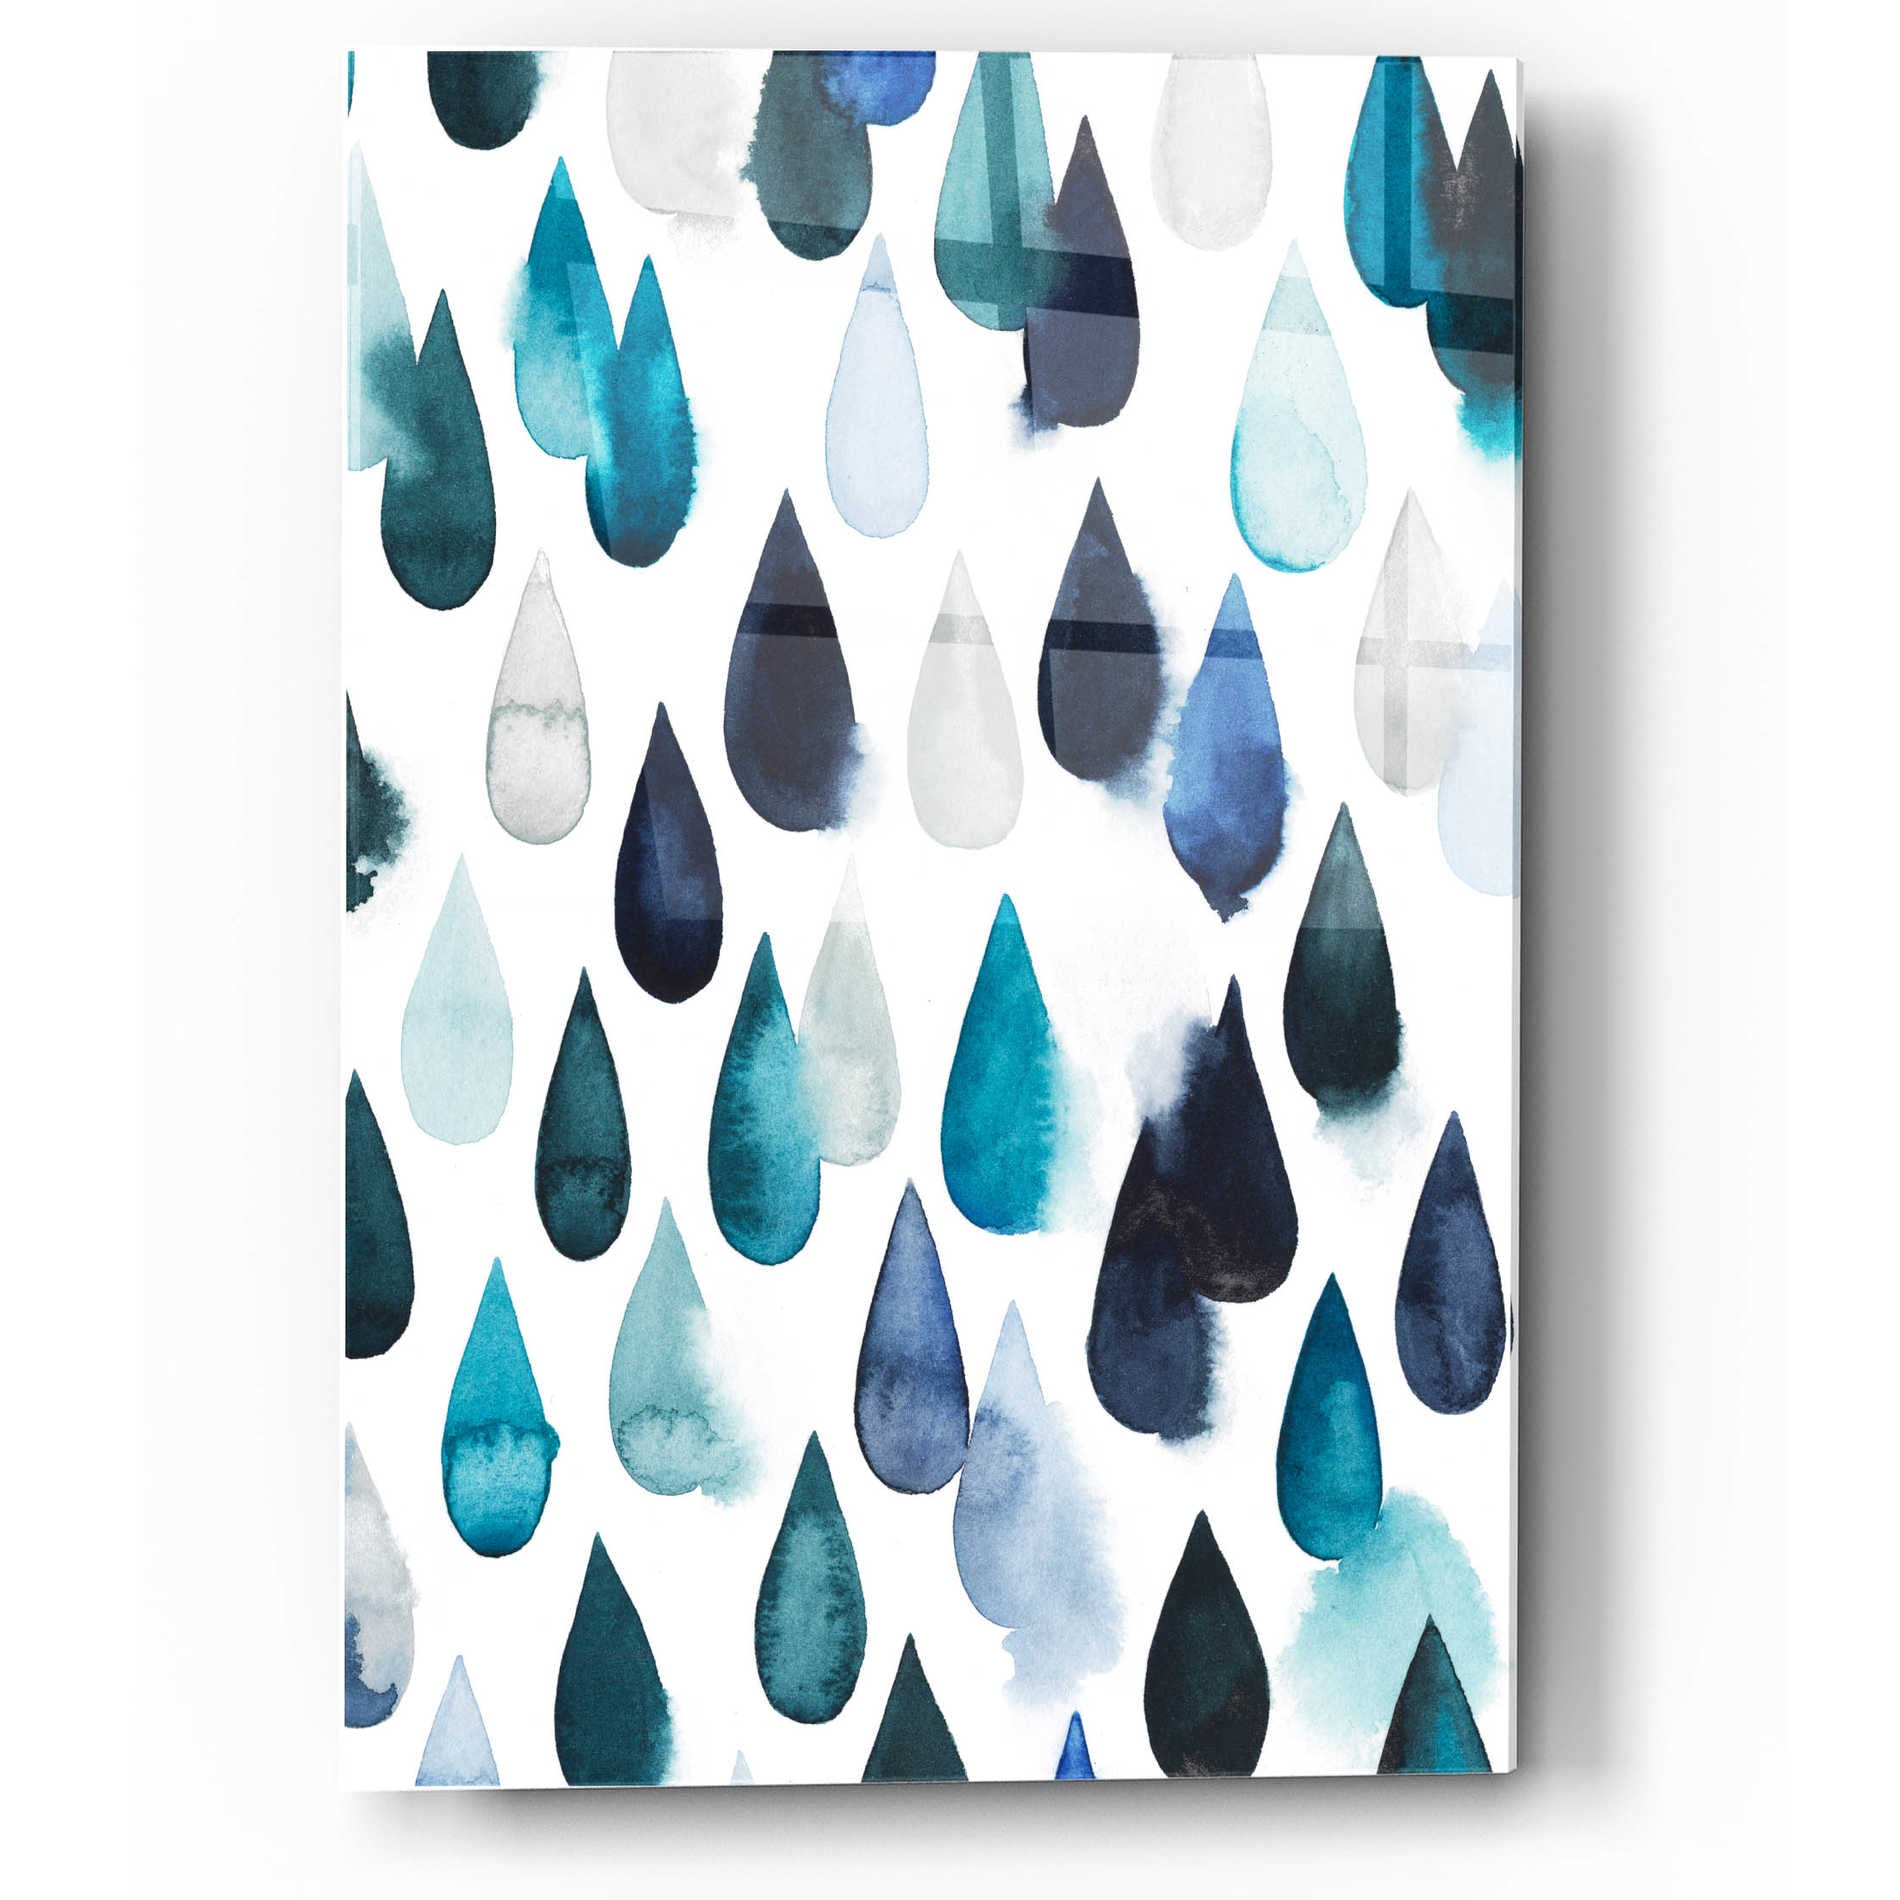 Epic Art 'Water Drops II' by Grace Popp, Acrylic Glass Wall Art,12x16